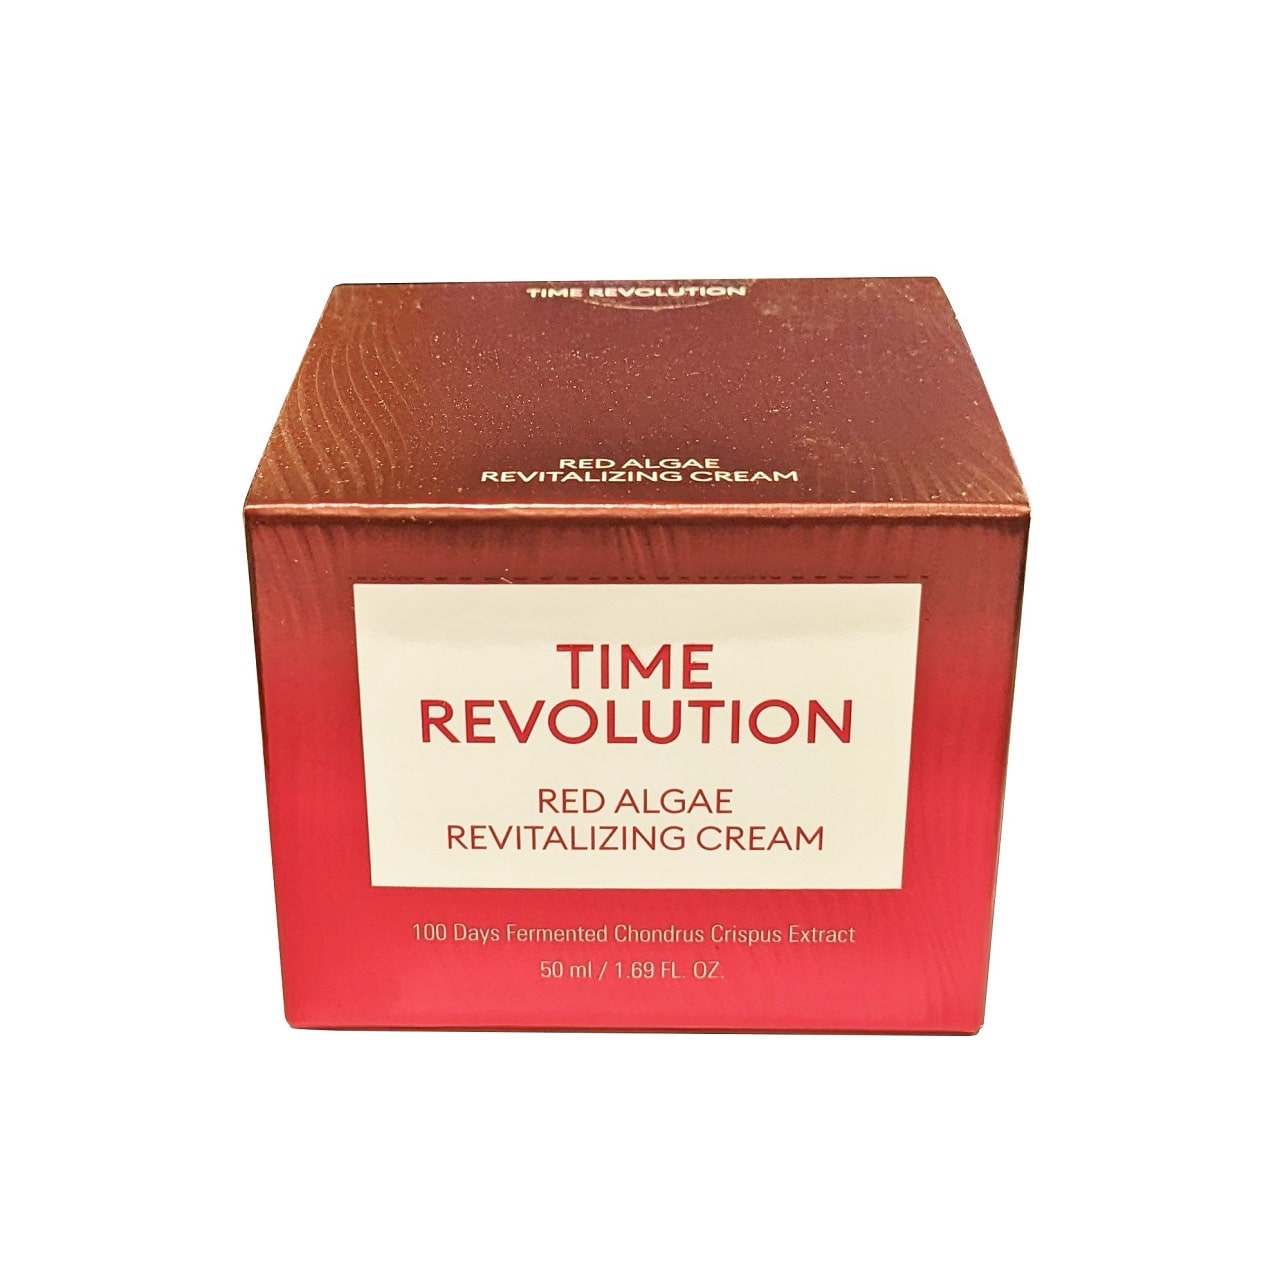 Product label for MISSHA Time Revolution Red Algae Revitalizing Cream (50 mL)